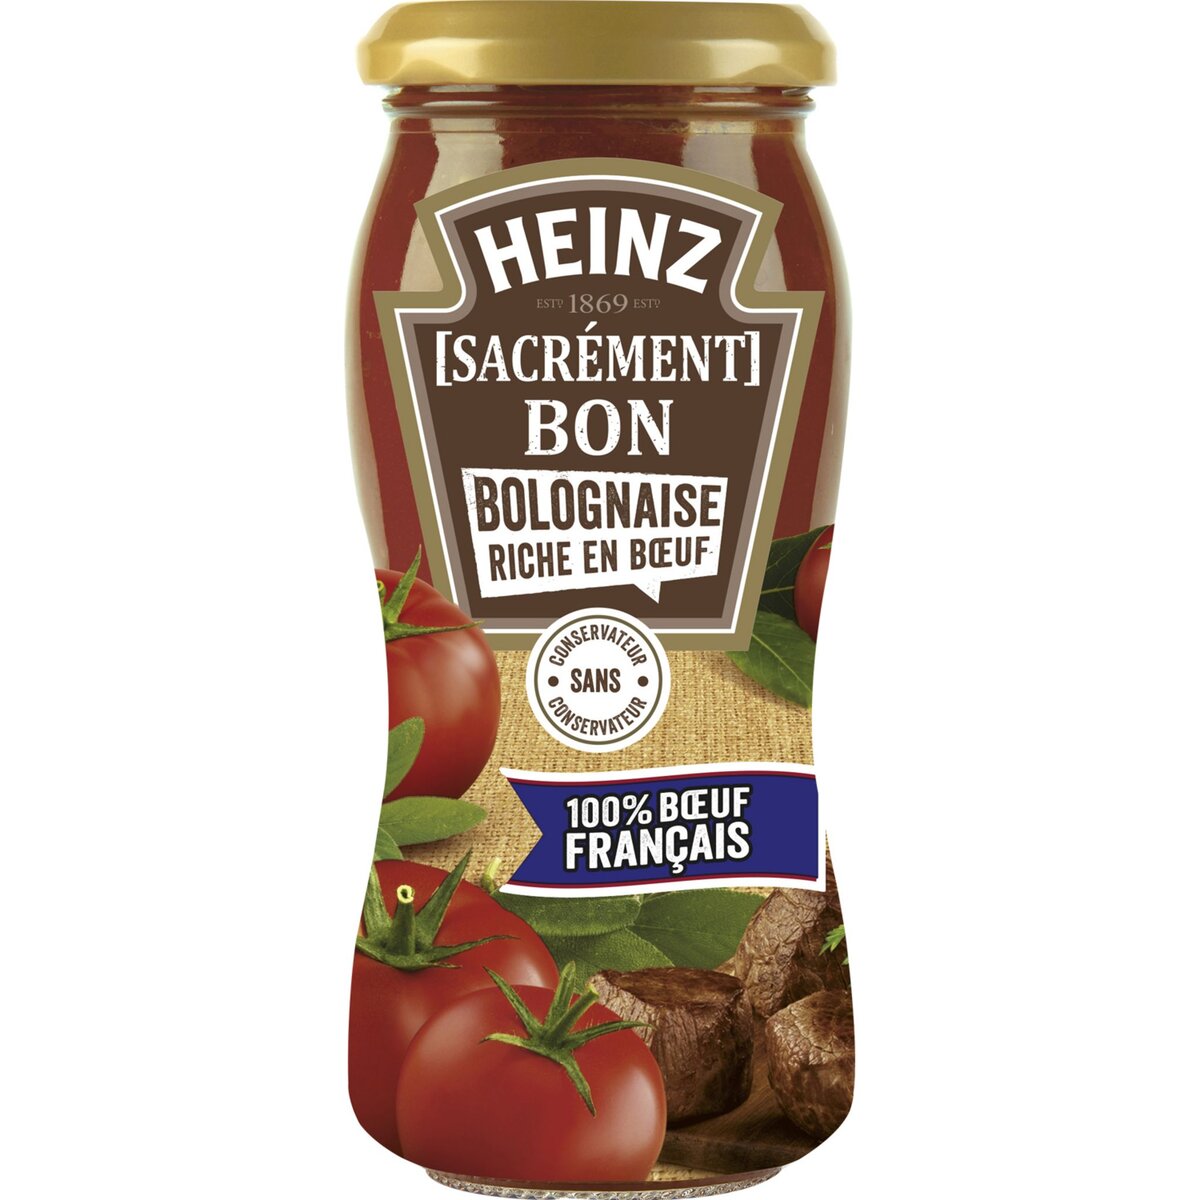 HEINZ Sacrément Bon sauce bolognaise riche en bœuf sans conservateur, en bocal 240g